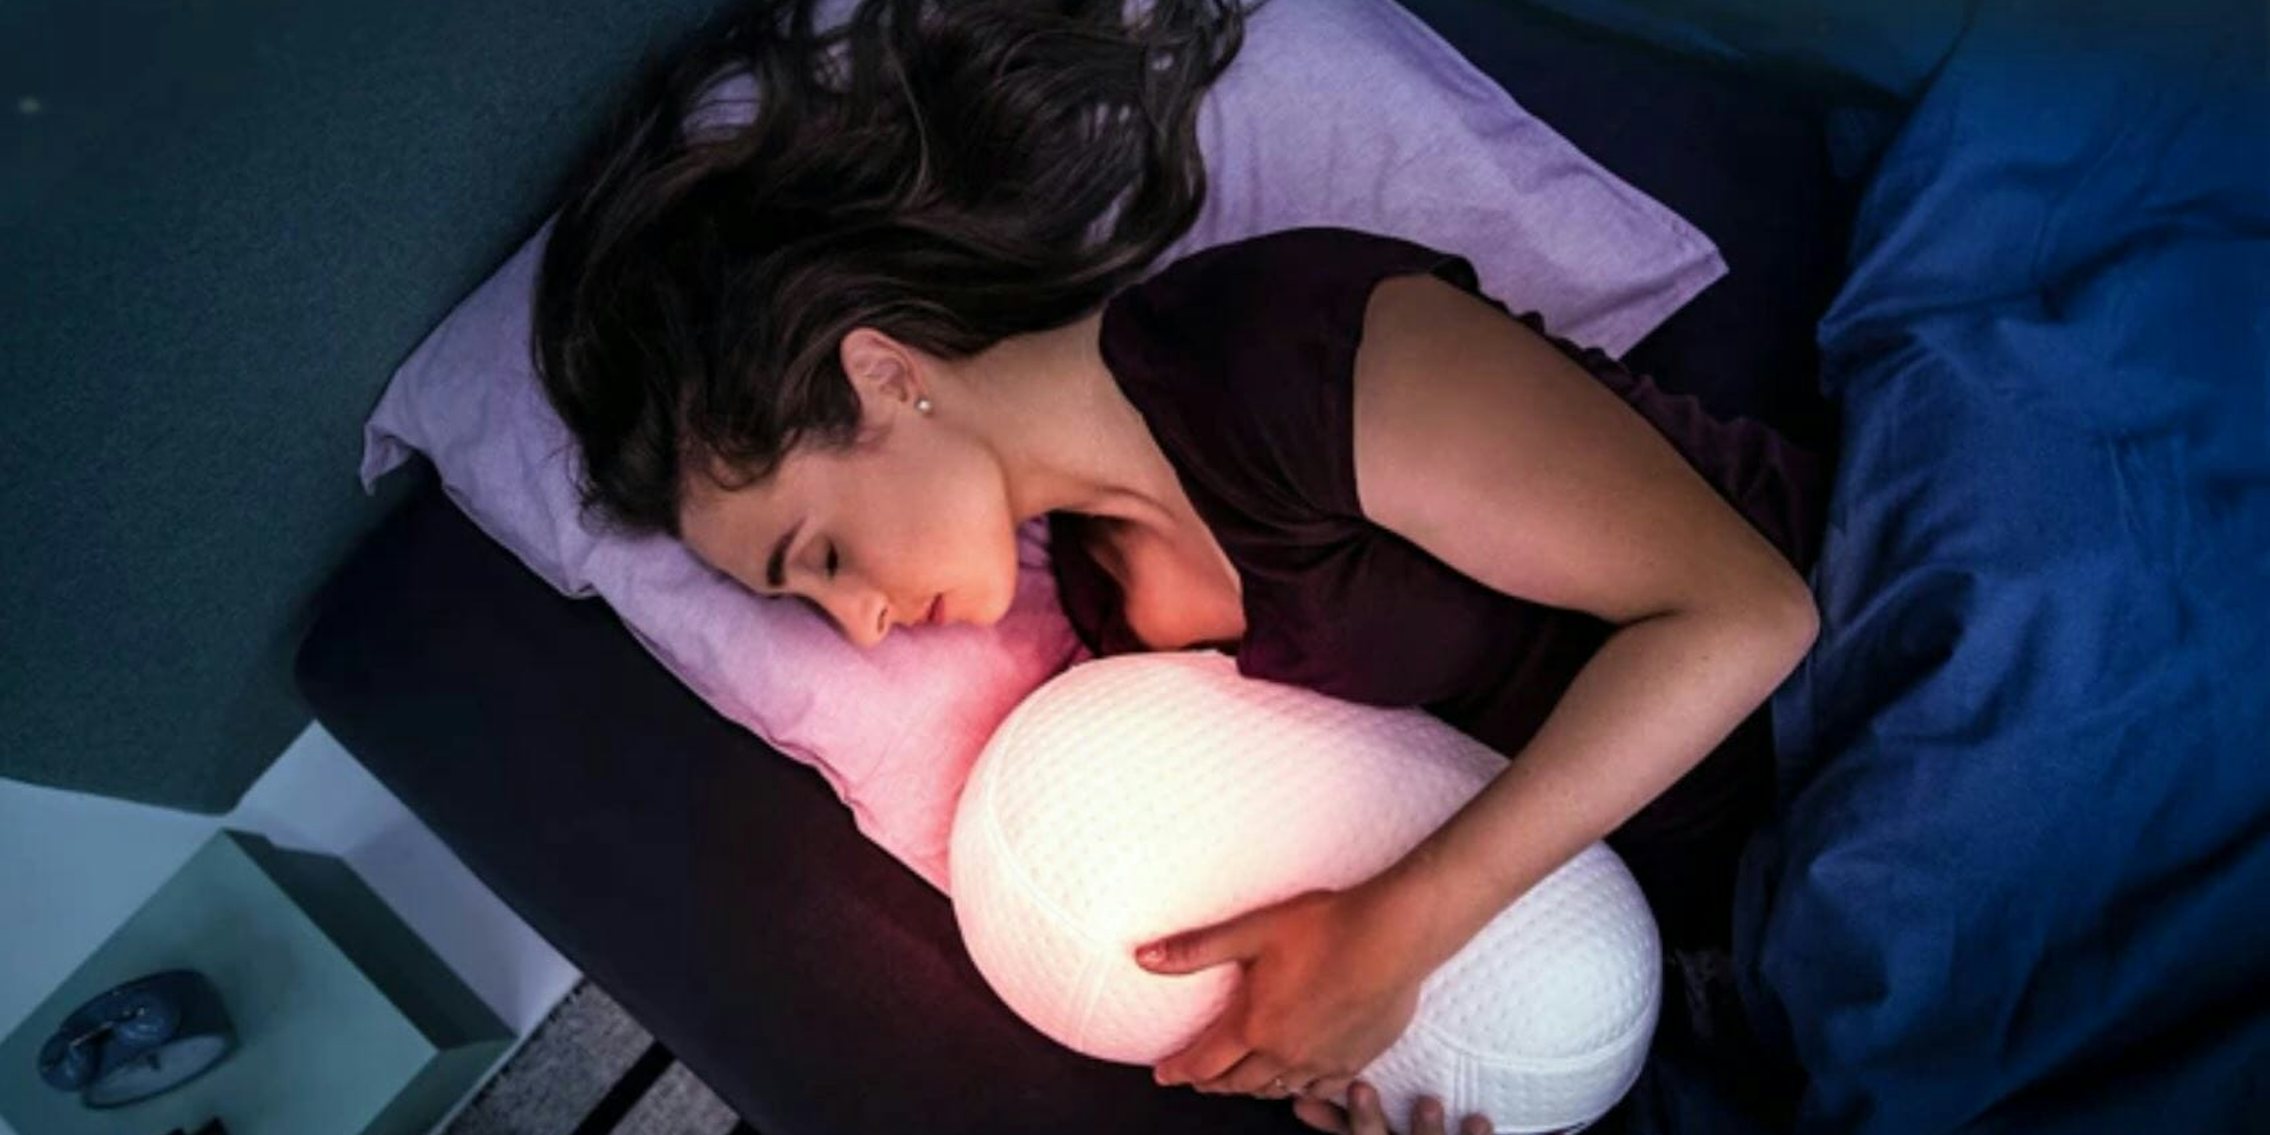 somnox insomnia pillow kickstarter